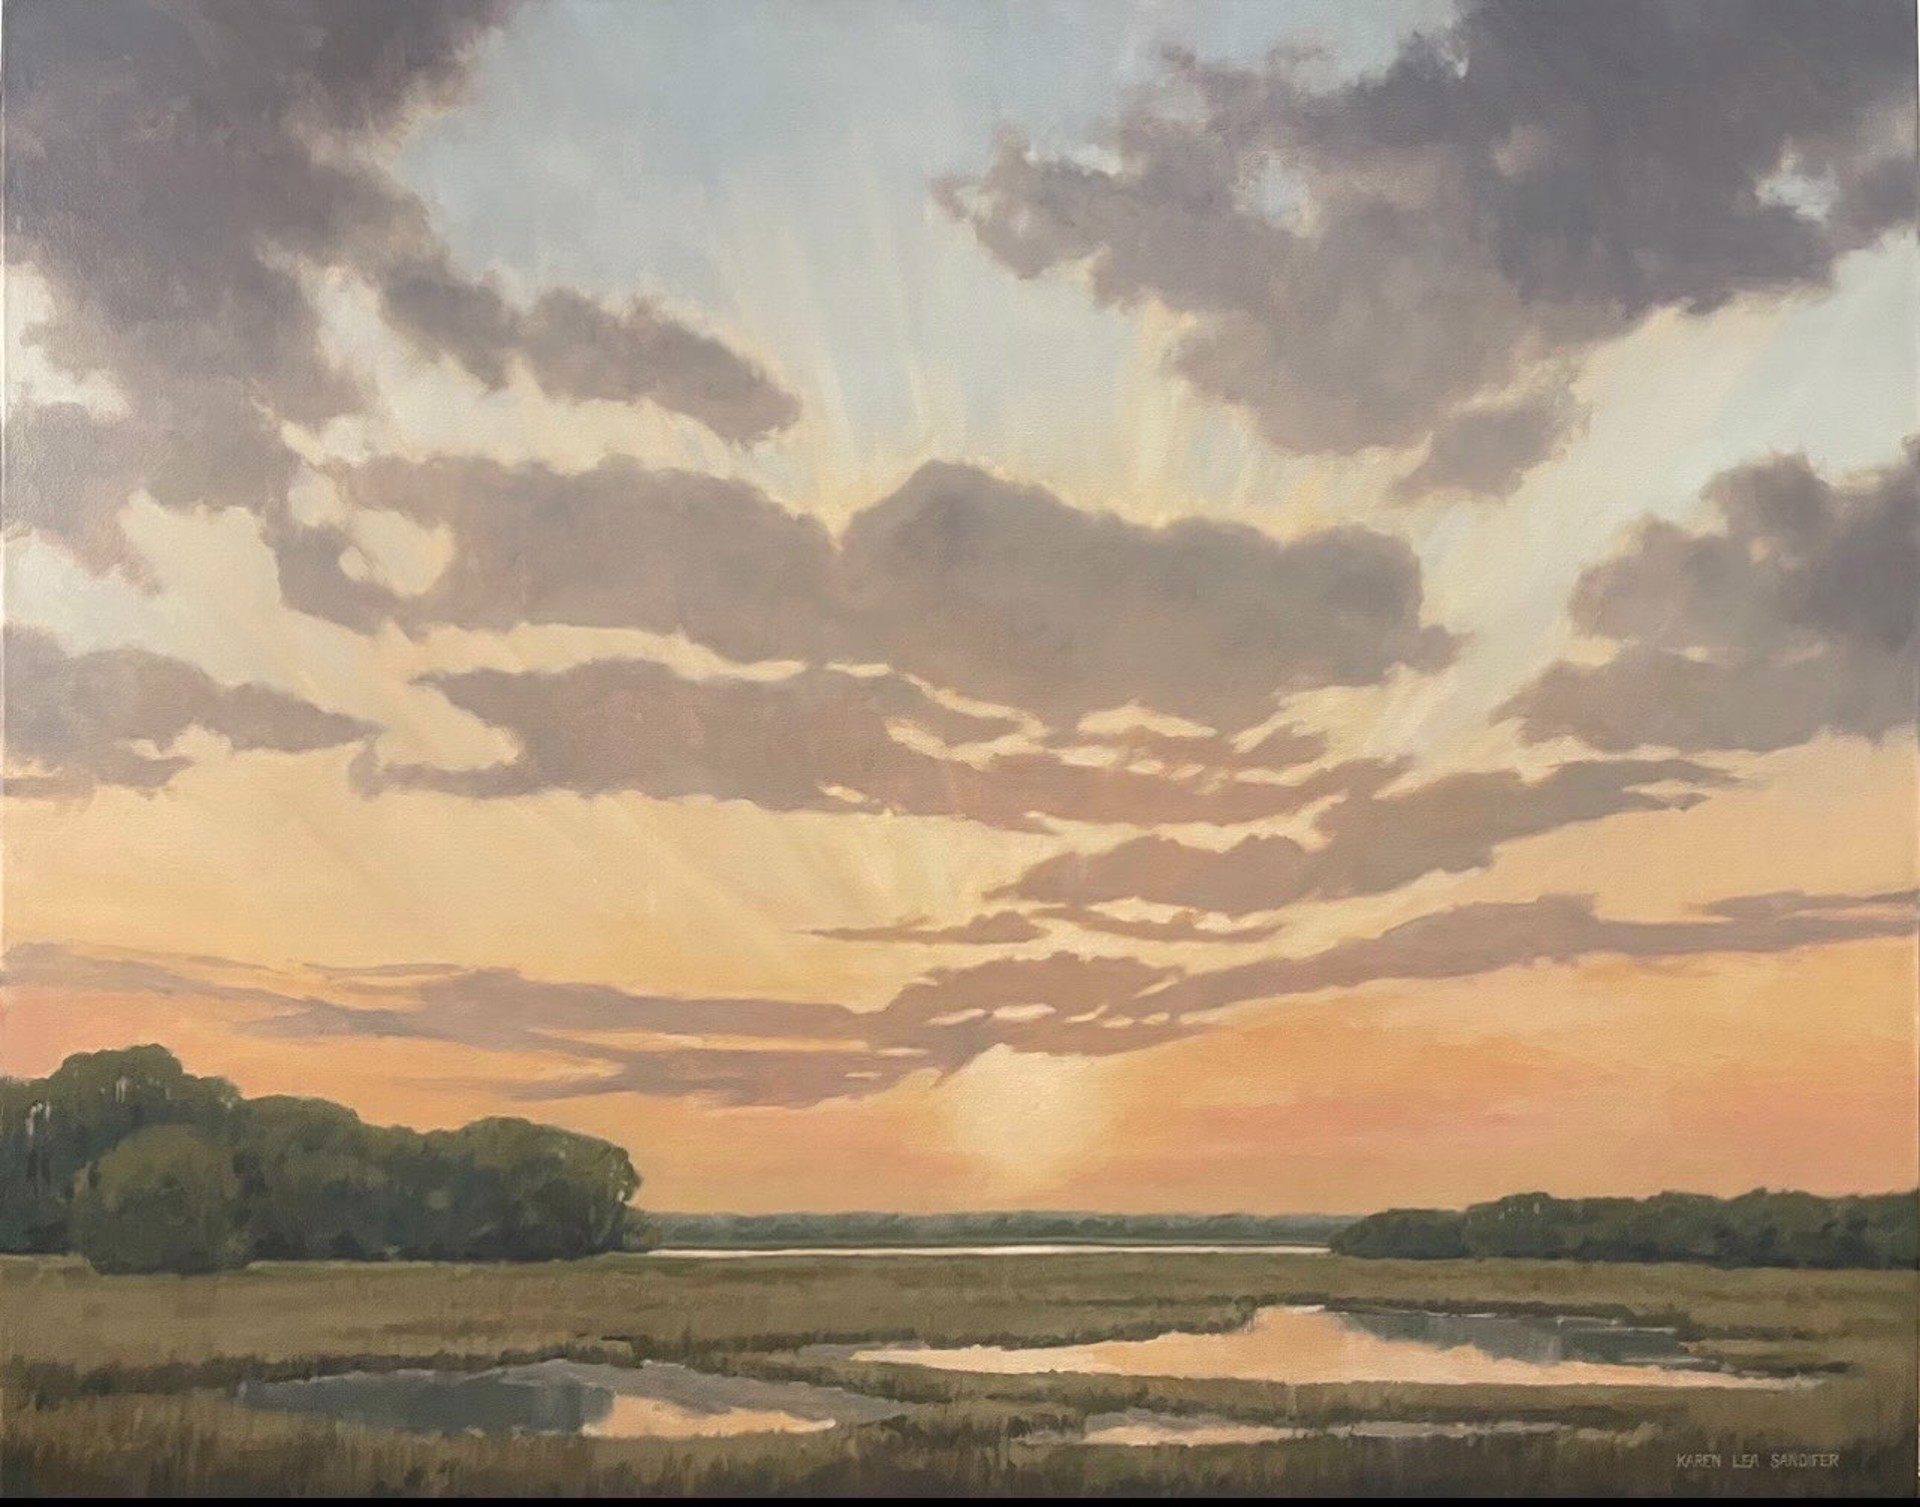 Sunset on the Marsh by Karen Lea Sandifer